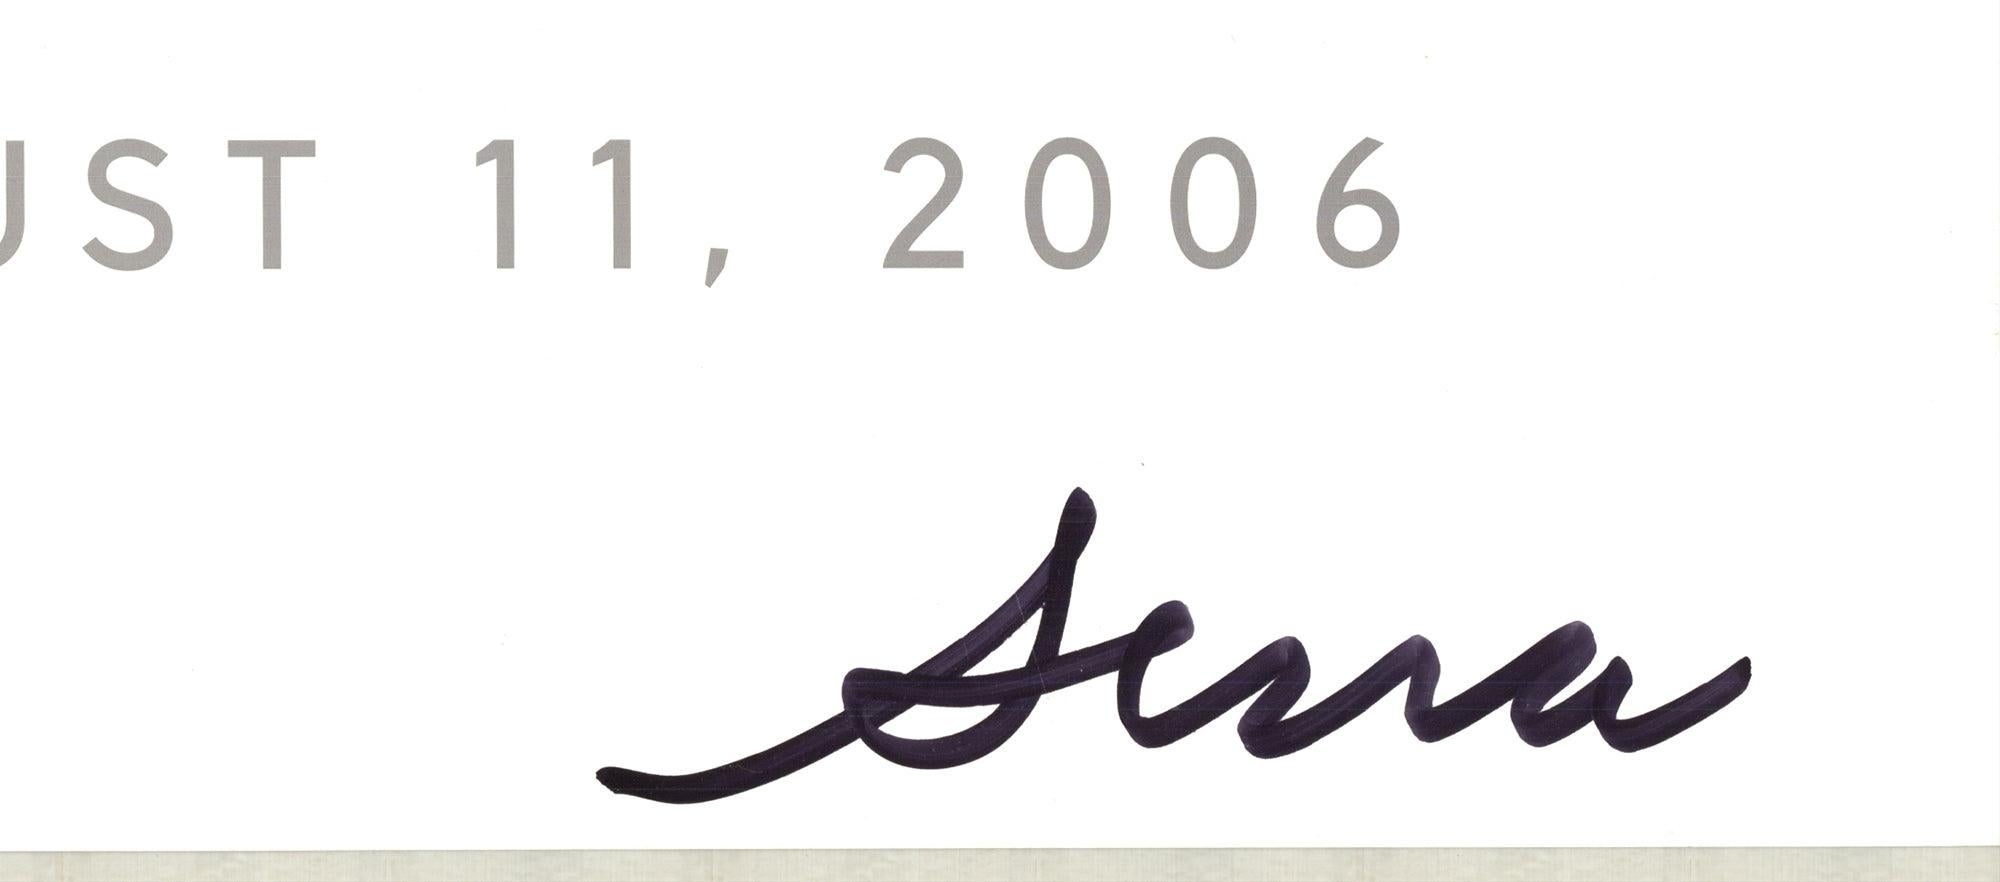 Lithographie Offset de Richard Serra « Rolled and Forged » (Roulé et forgé) 2006 - Signé 1